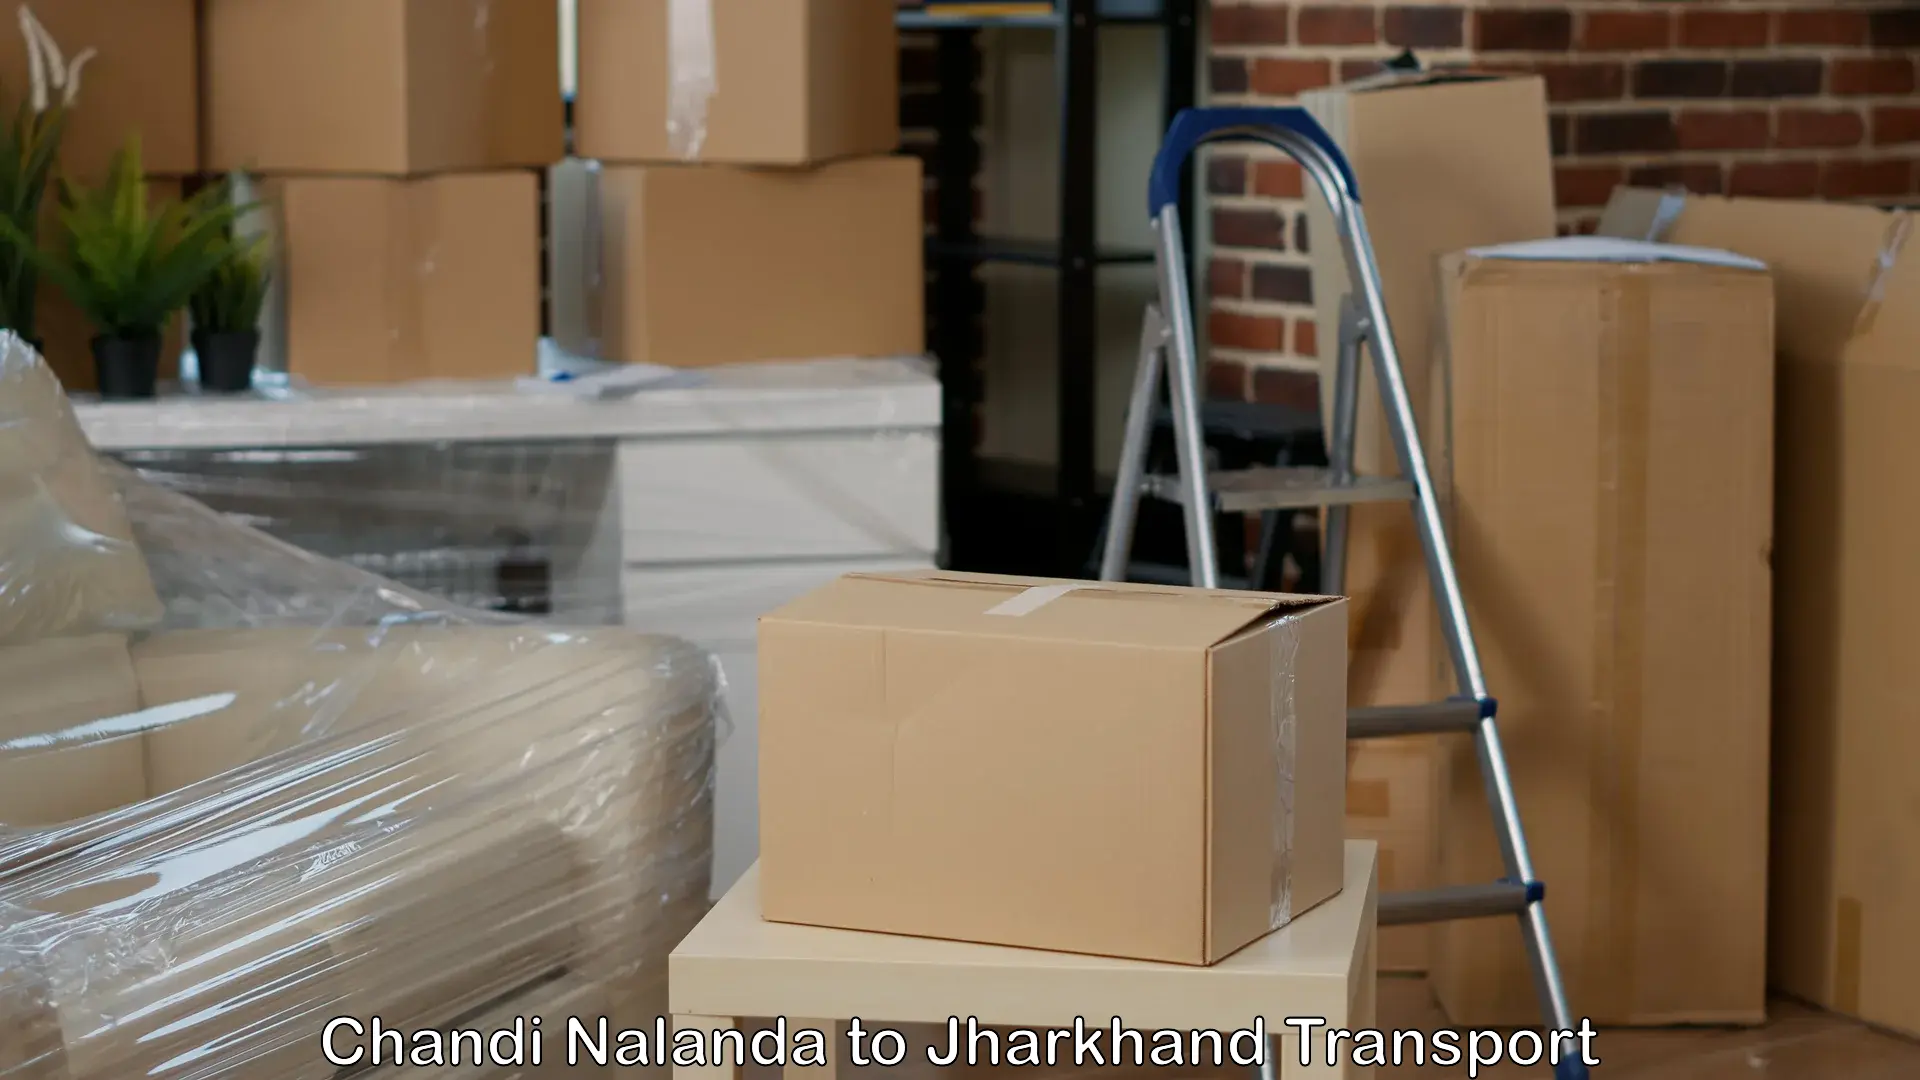 Nationwide transport services Chandi Nalanda to Musabani